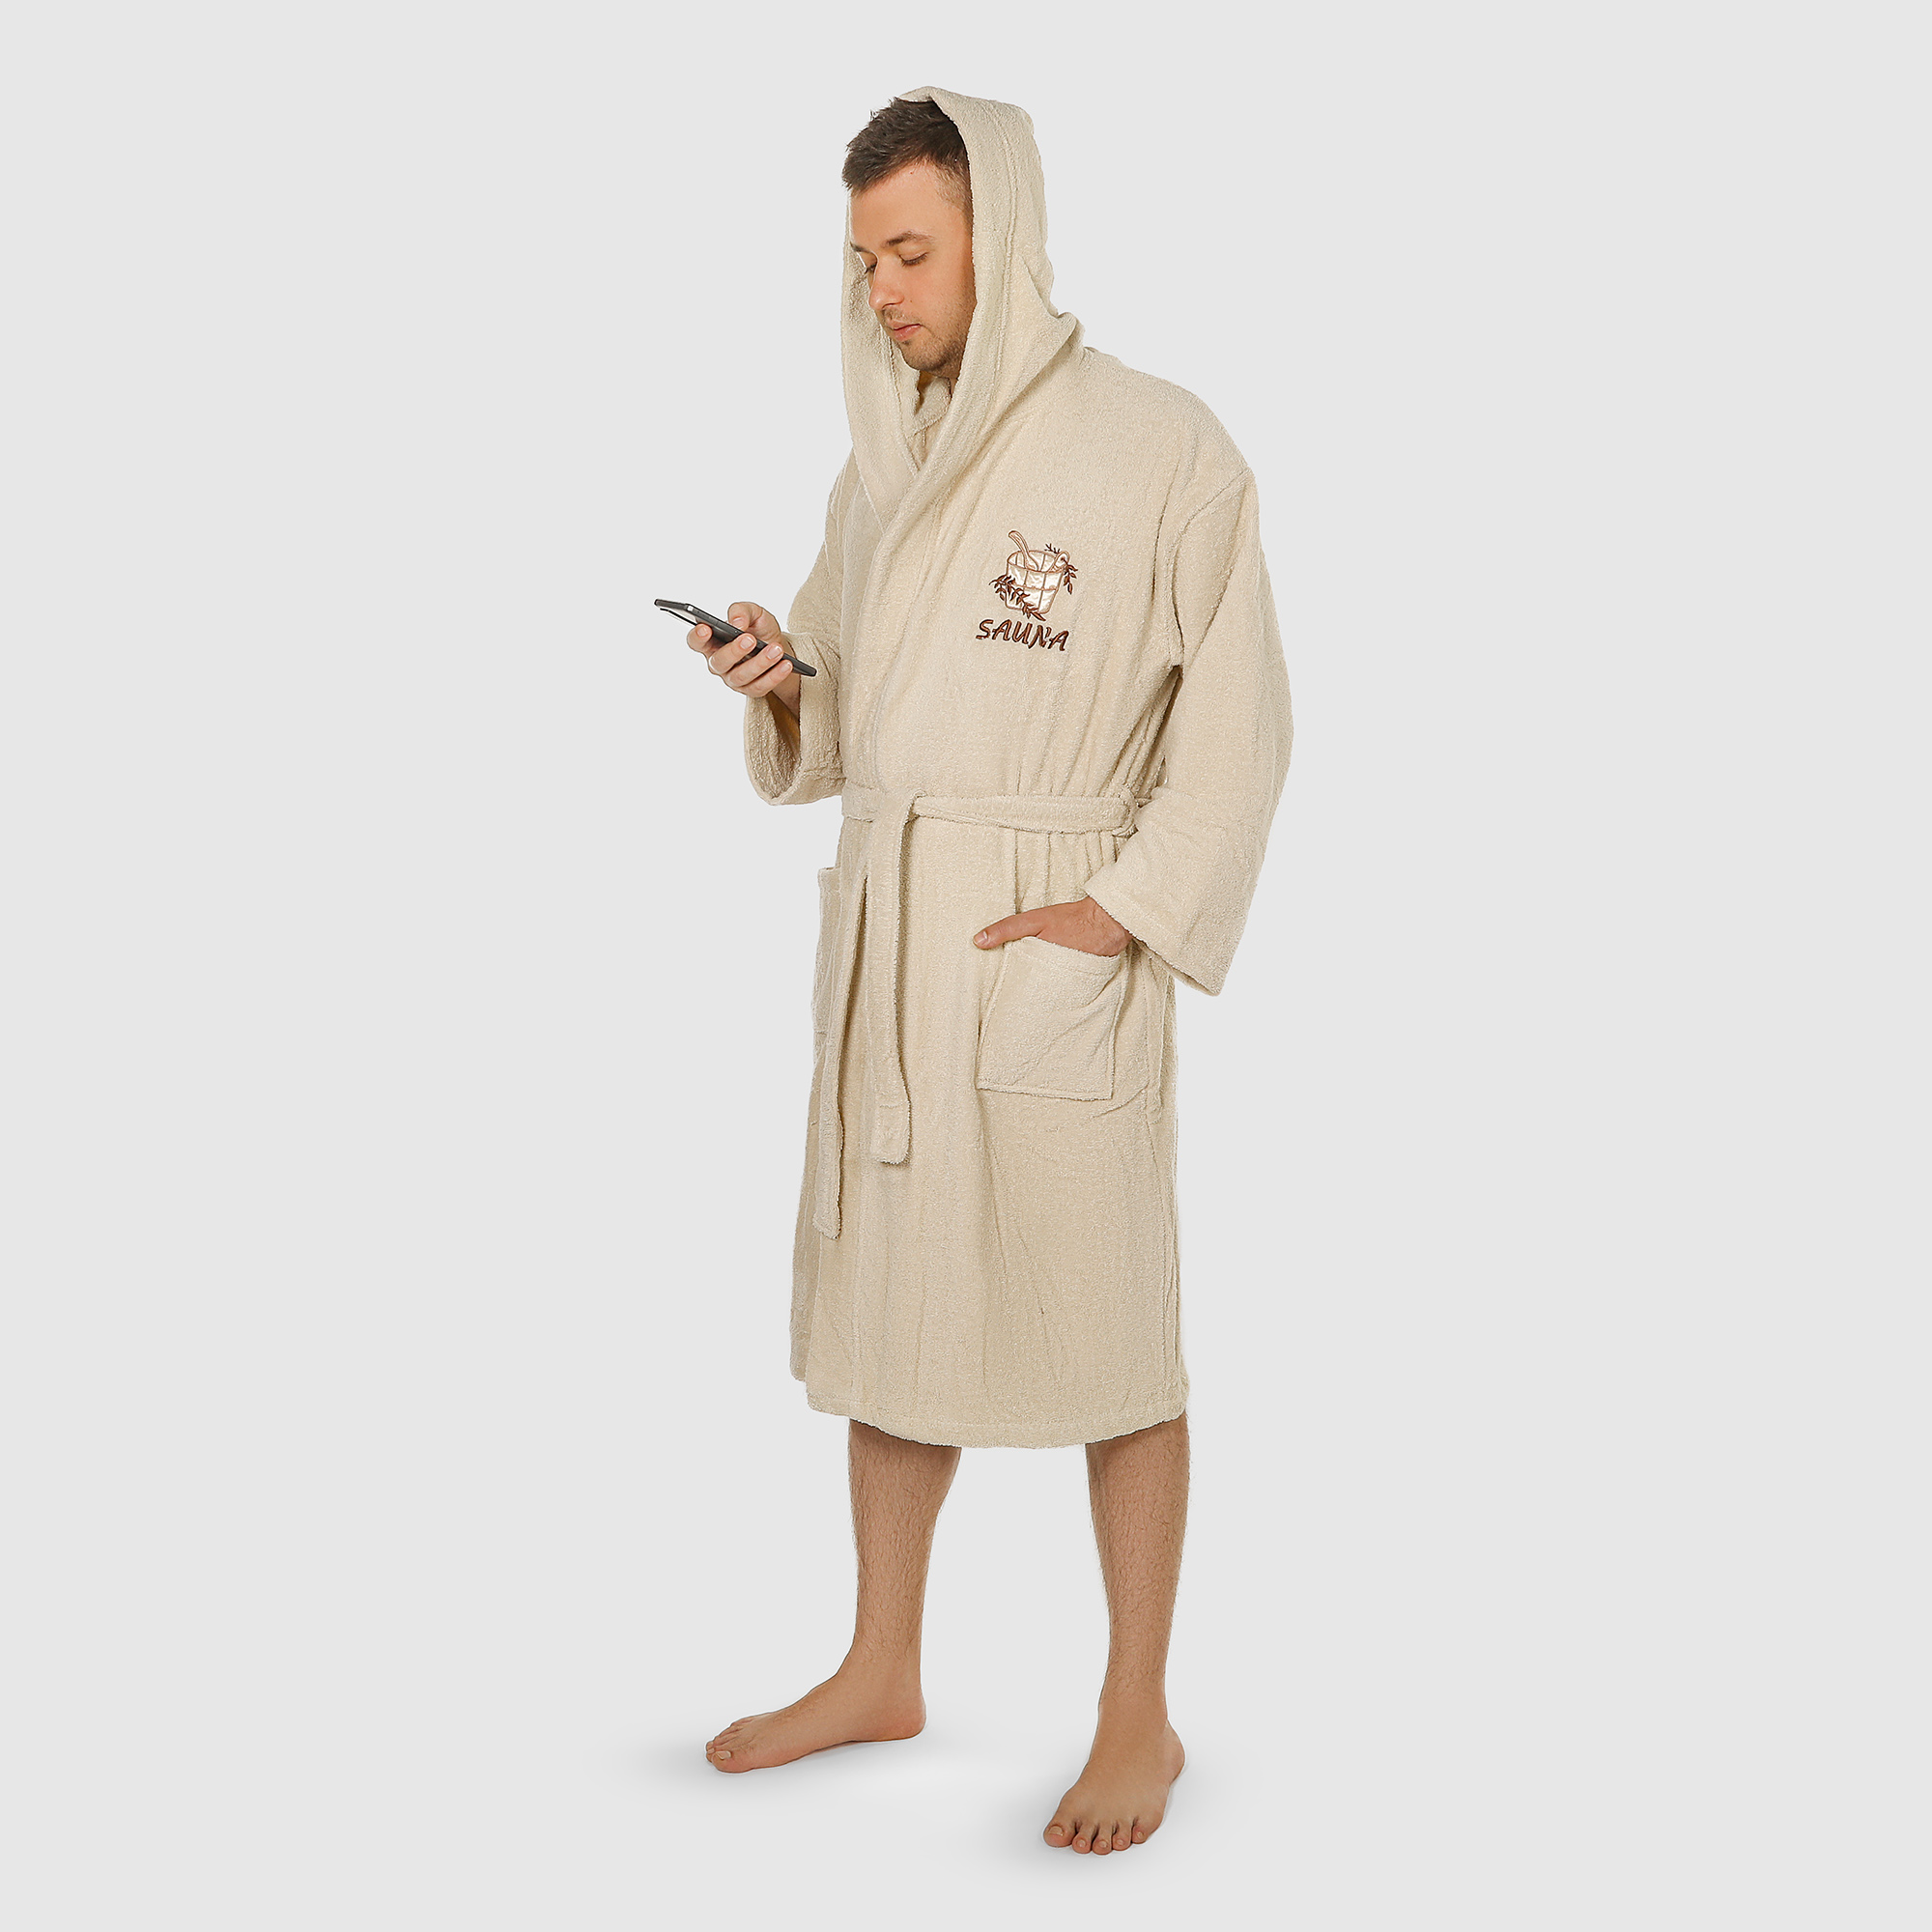 Халат мужской Asil Sauna brown XL махровый с капюшоном халат махровый asil sauna с капюшоном xxxl 83025031